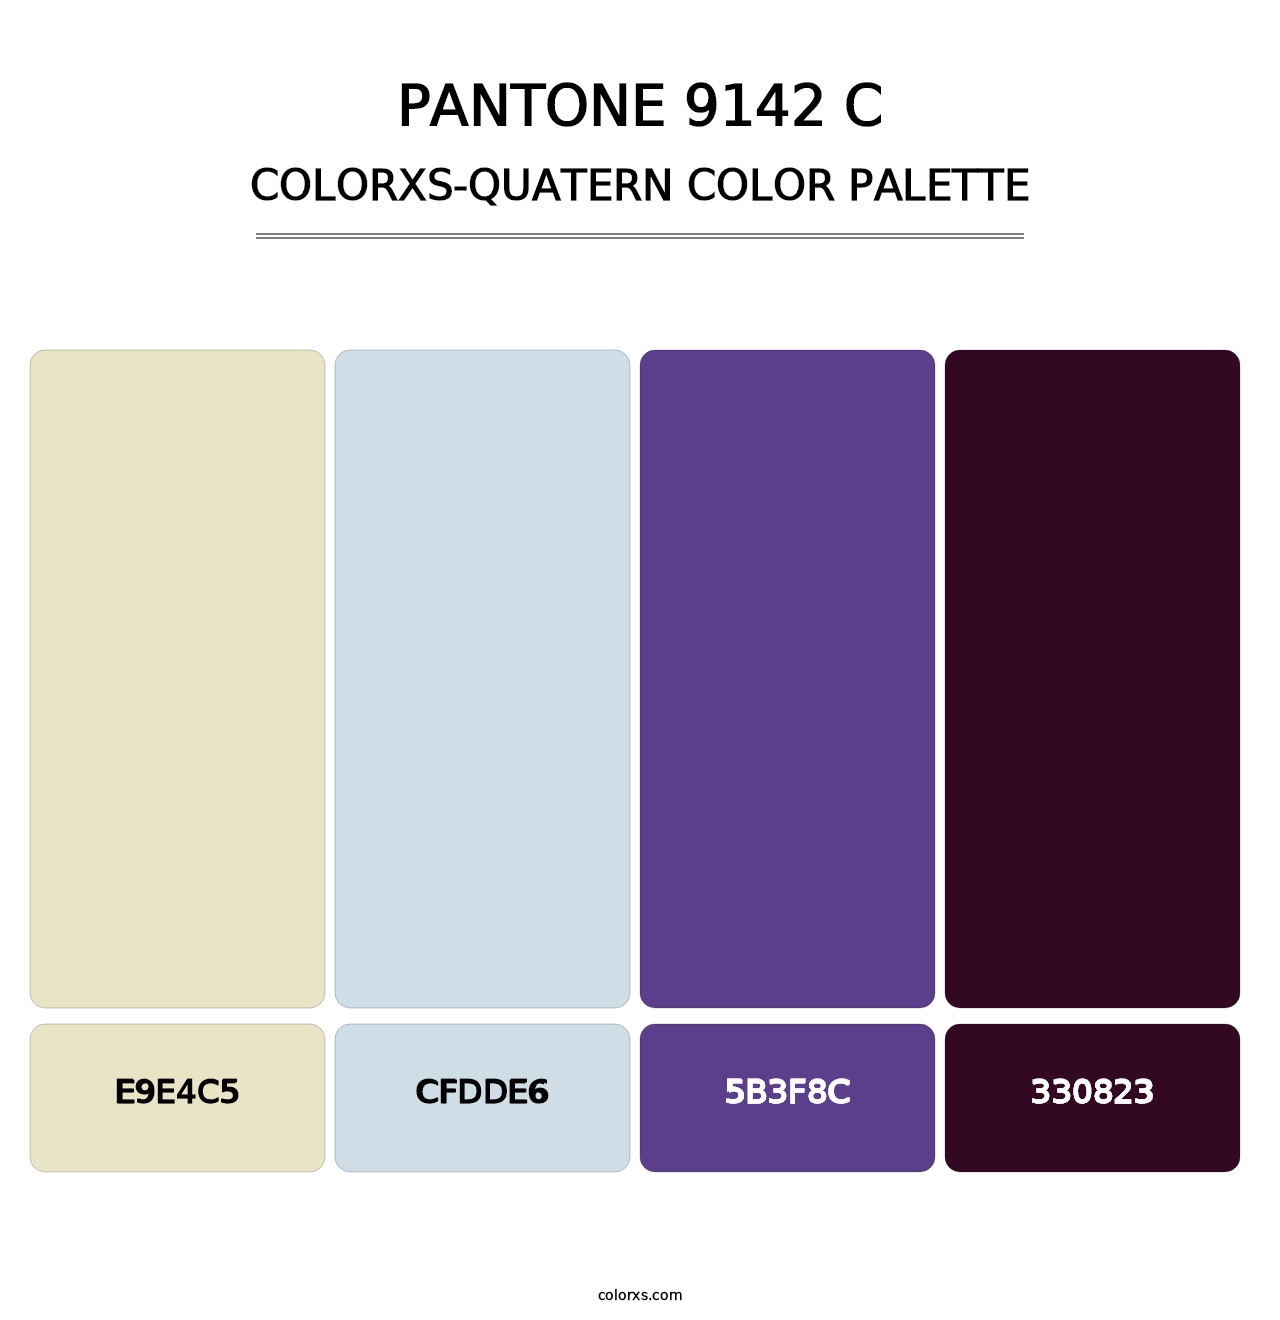 PANTONE 9142 C - Colorxs Quatern Palette